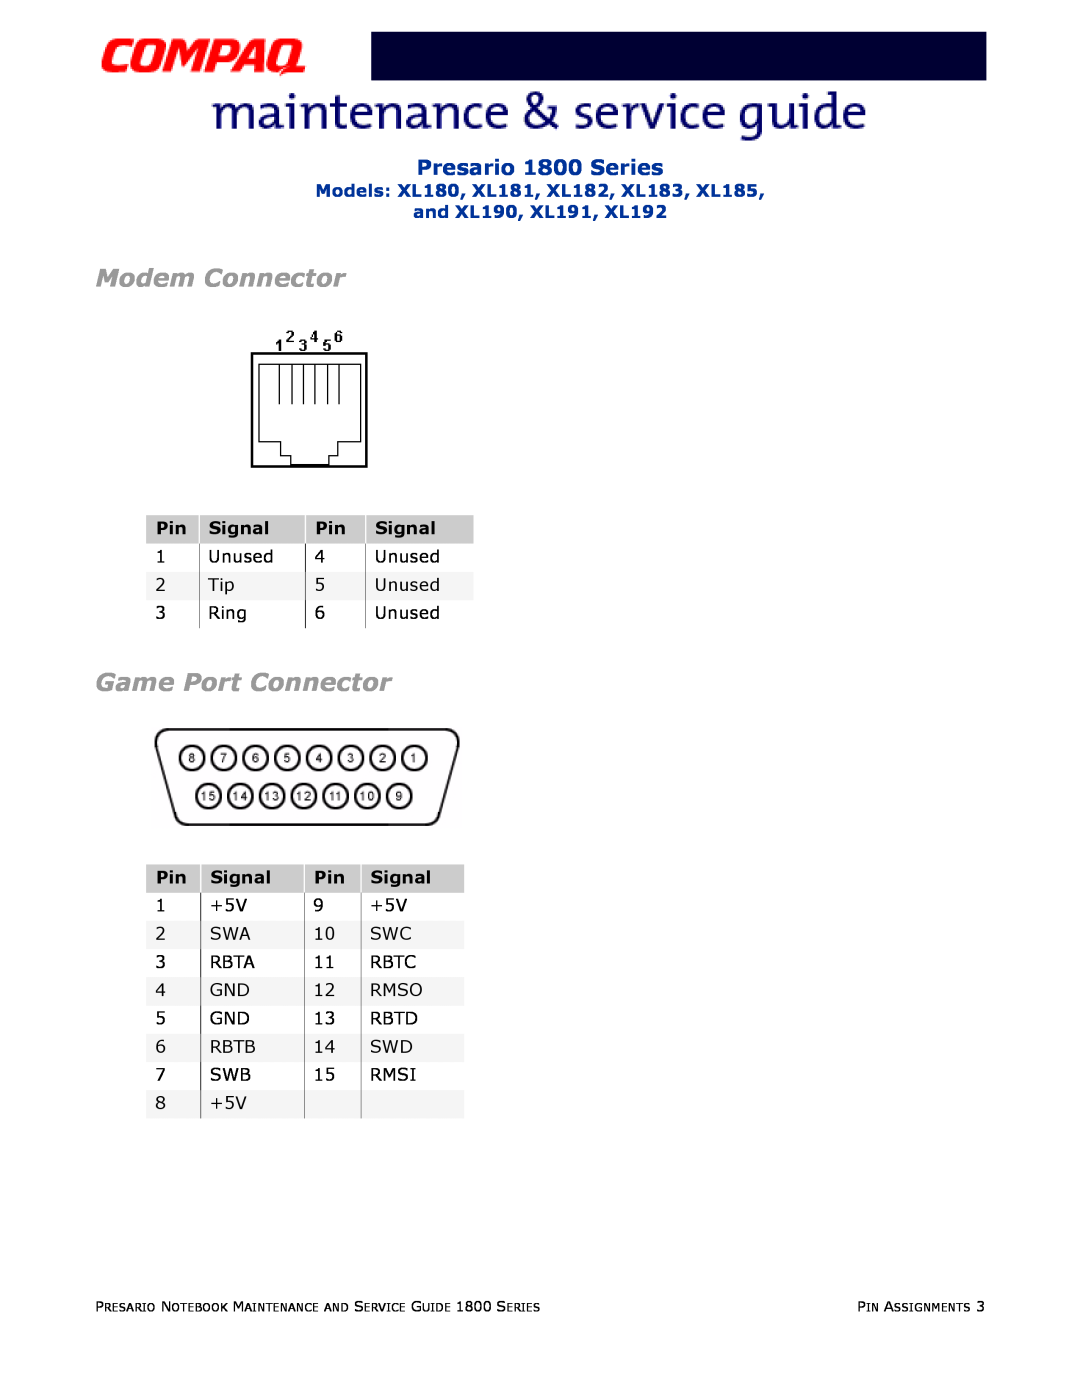 Compaq XL191, XL190, XL180, XL192, XL183 Modem Connector, Game Port Connector, Presario 1800 Series, Signal, Pin Assignments 